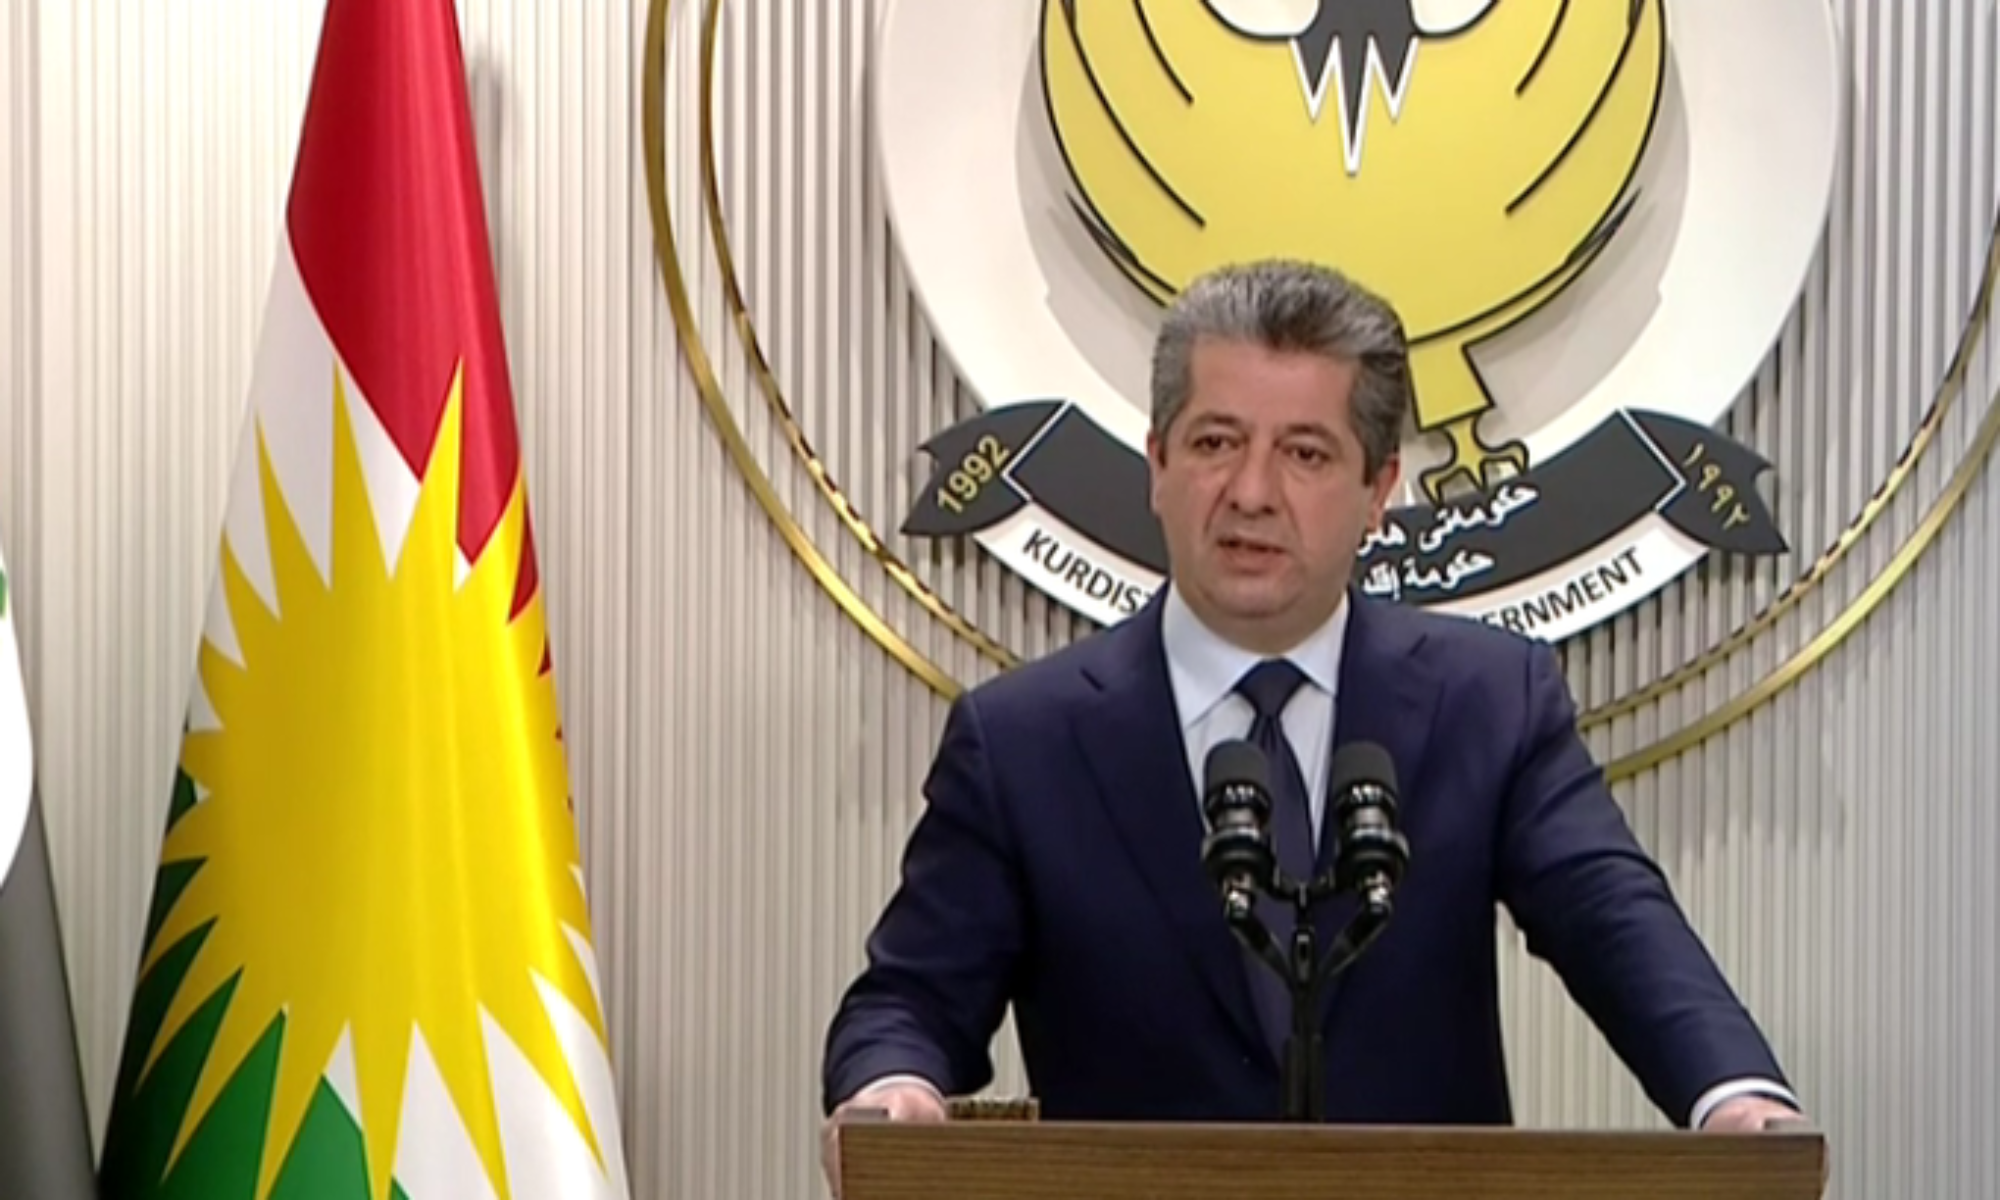 Başbakan Mesrur Barzani Irak Federal Mahkemesine dönük basın açıklaması yaptı: Bu kararı red ediyoruz, kaynağımız ise Irak anayasasıdır